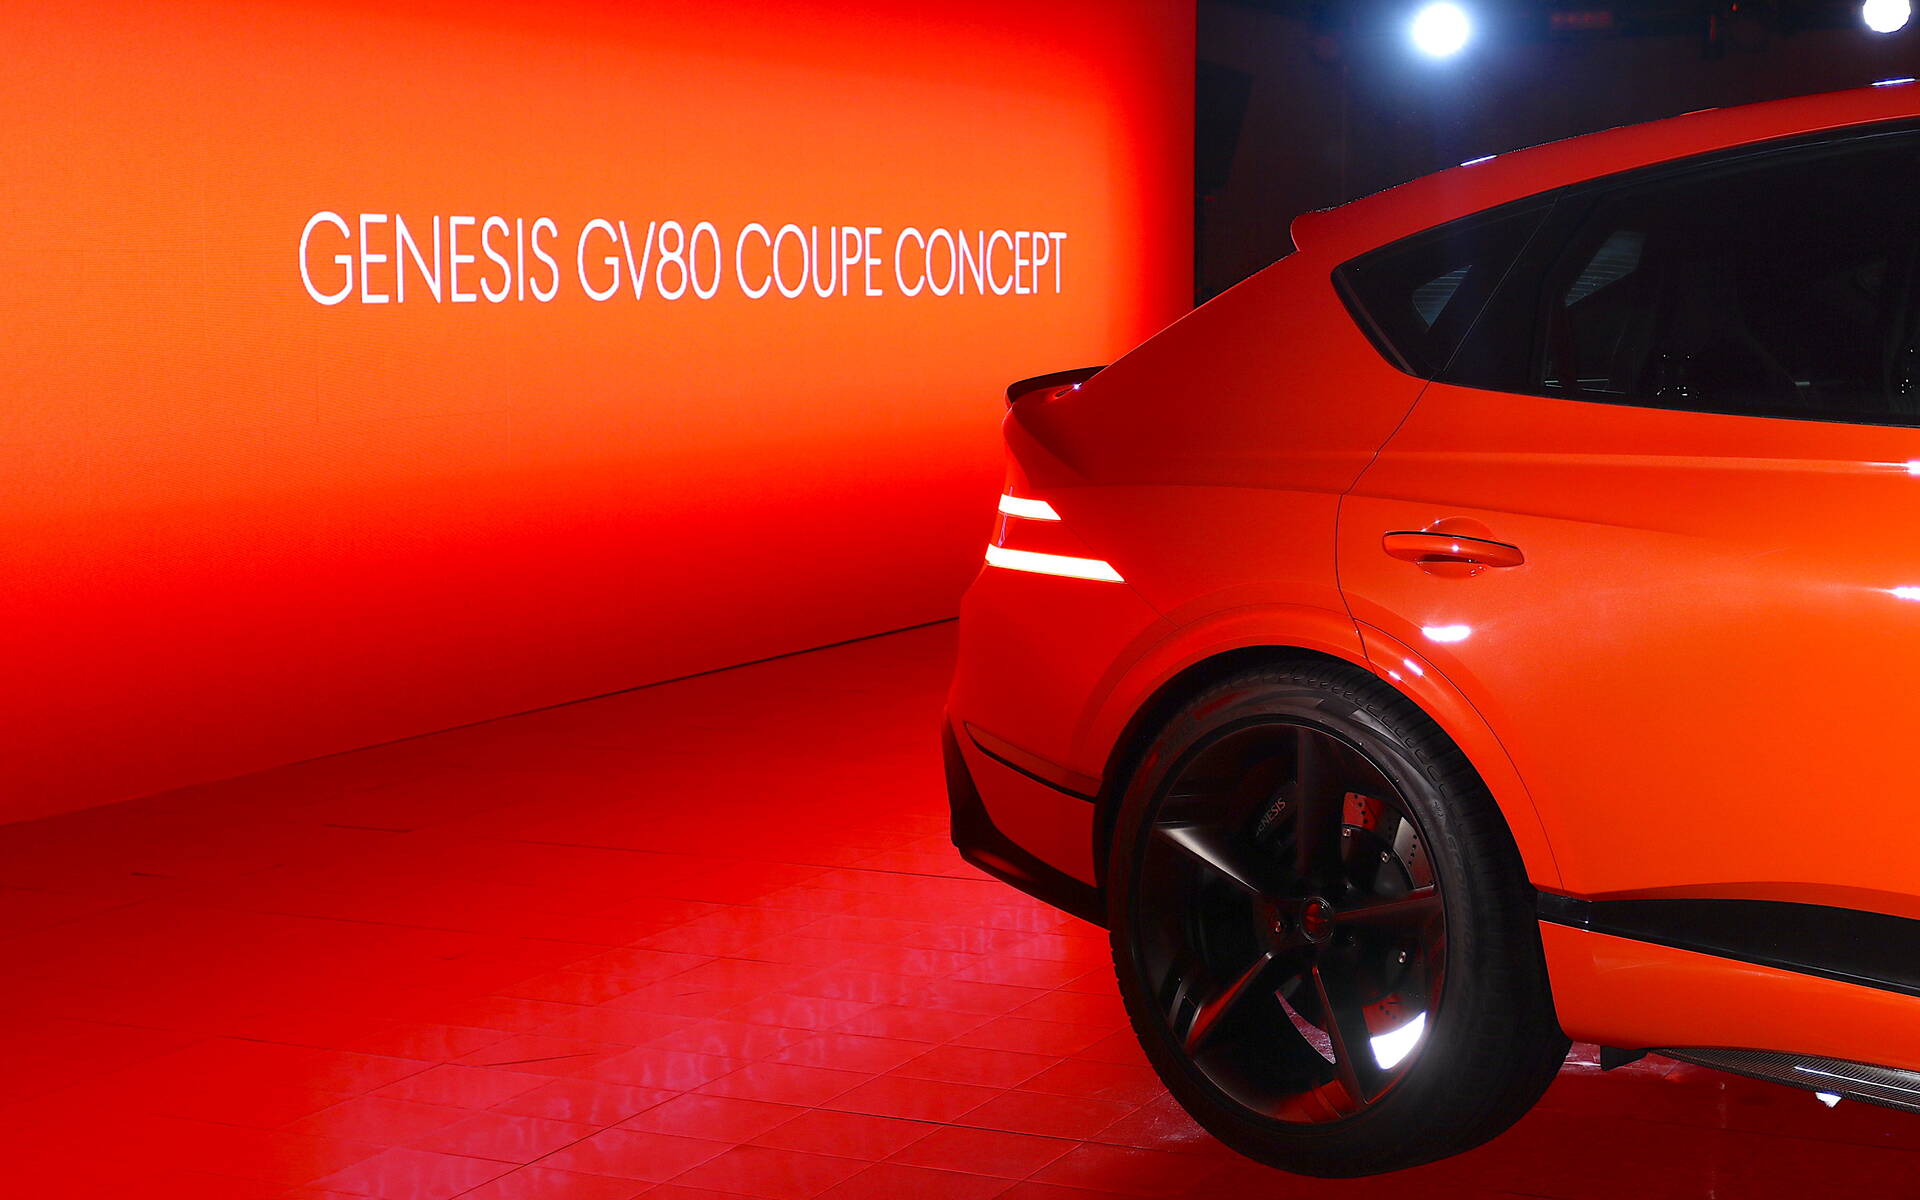 Genesis présente le concept GV80 Coupe à New York  568313-genesis-presente-le-concept-gv80-coupe-a-new-york